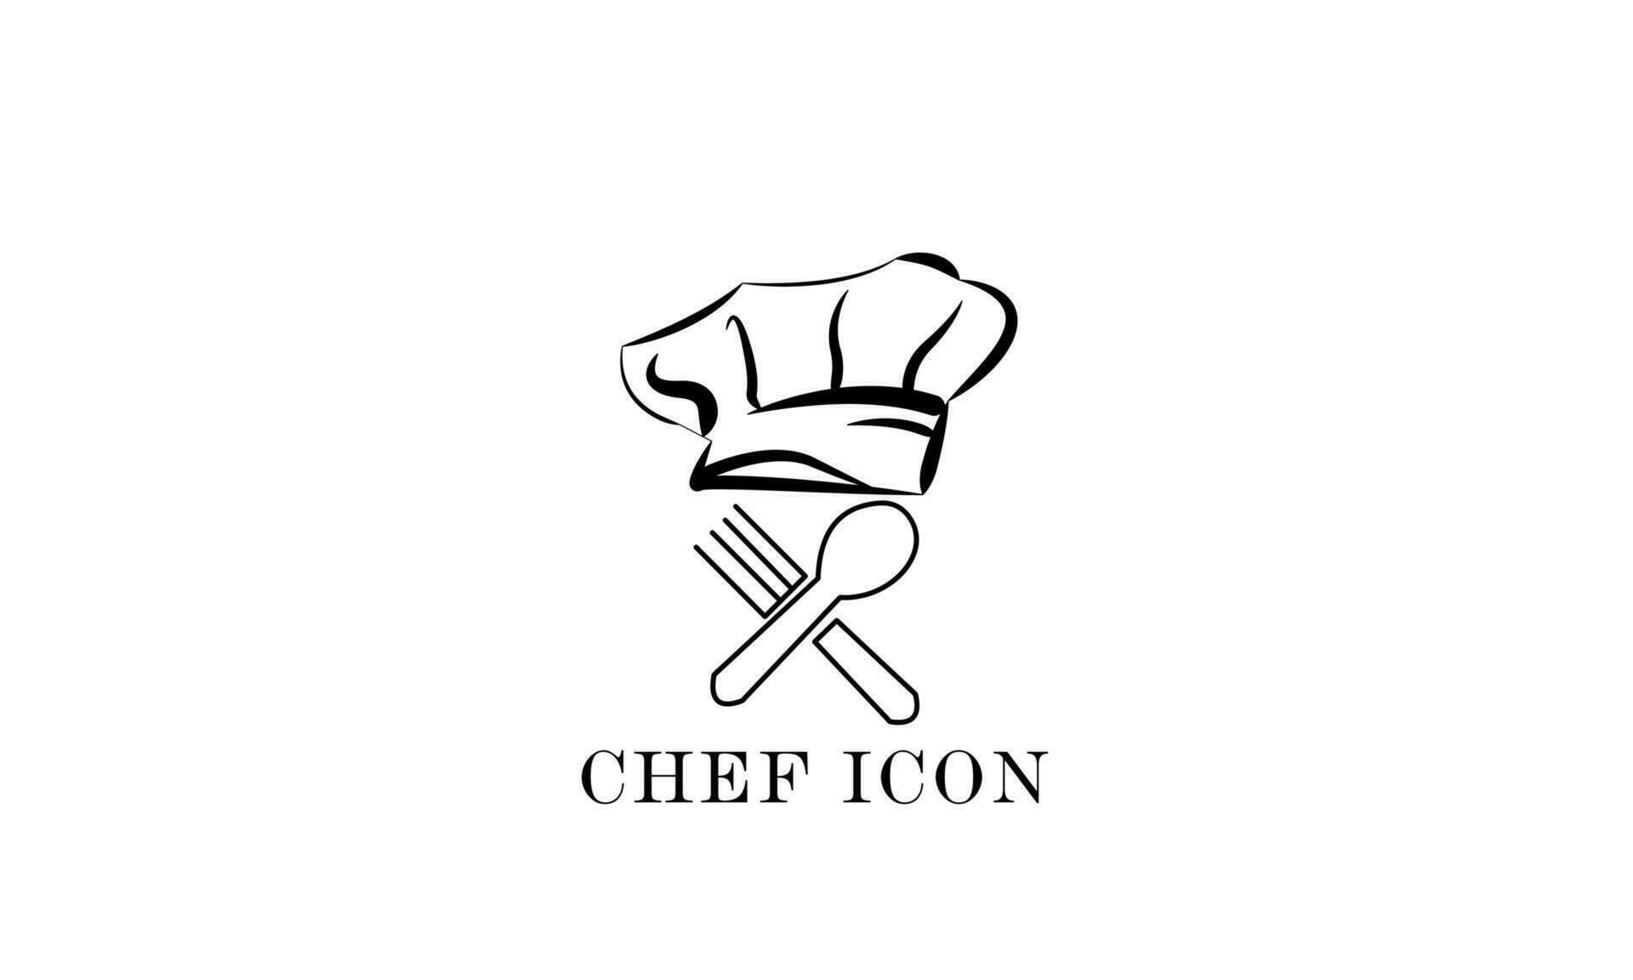 vektor kock ikon, med en kockens hatt och bestick på en vit bakgrund